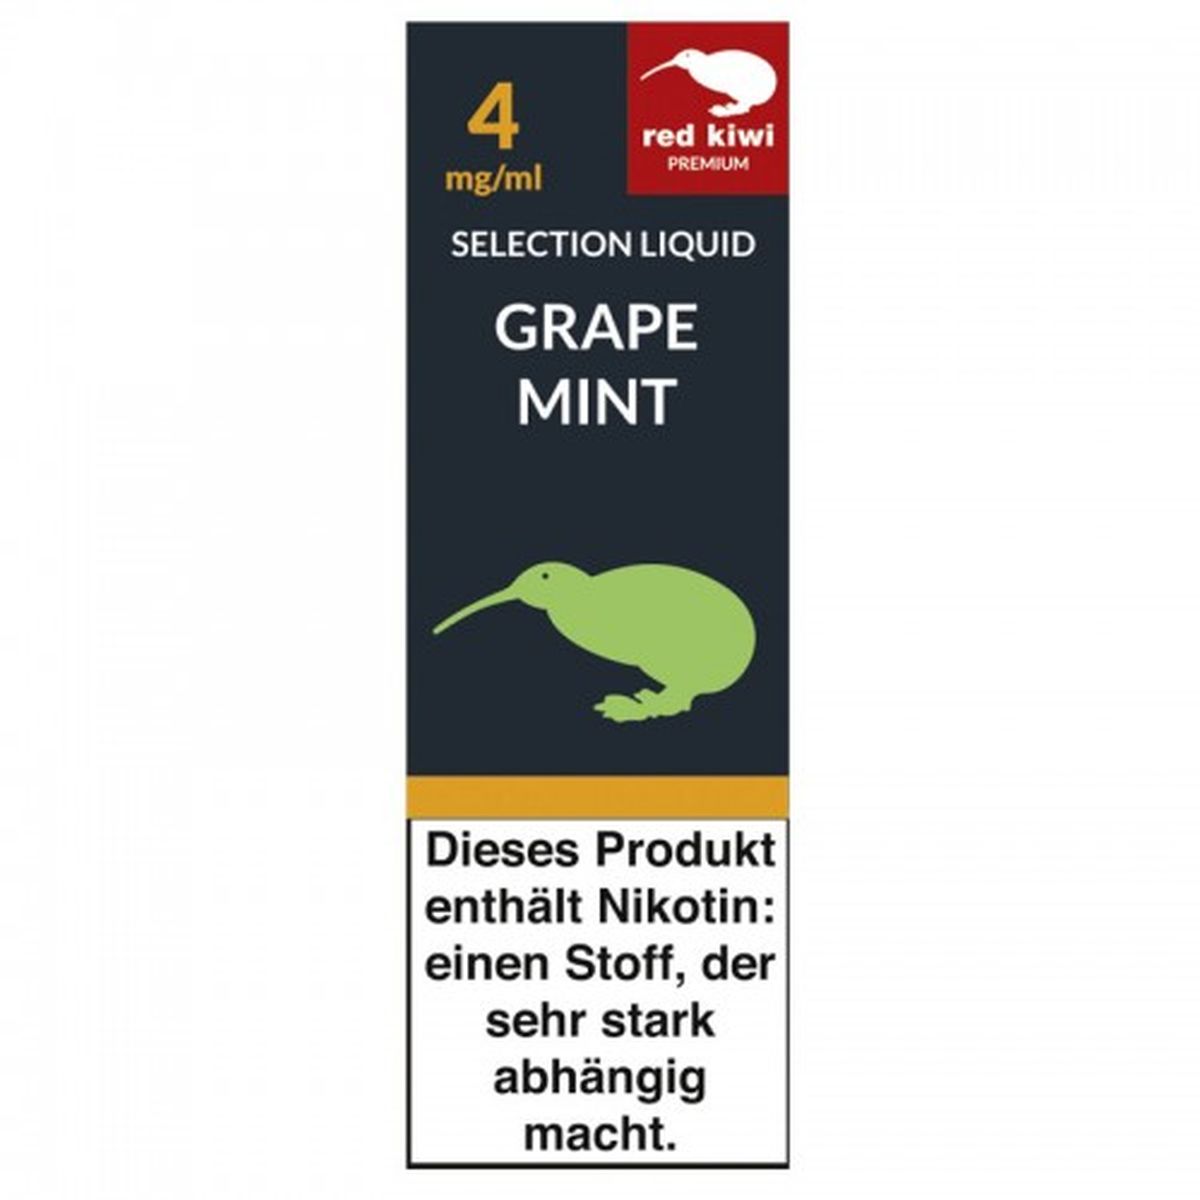 Red Kiwi Red Kiwi eLiquid Selection Grape Mint 4mg Nikotin/ml bei www.Tabakring.de kaufen